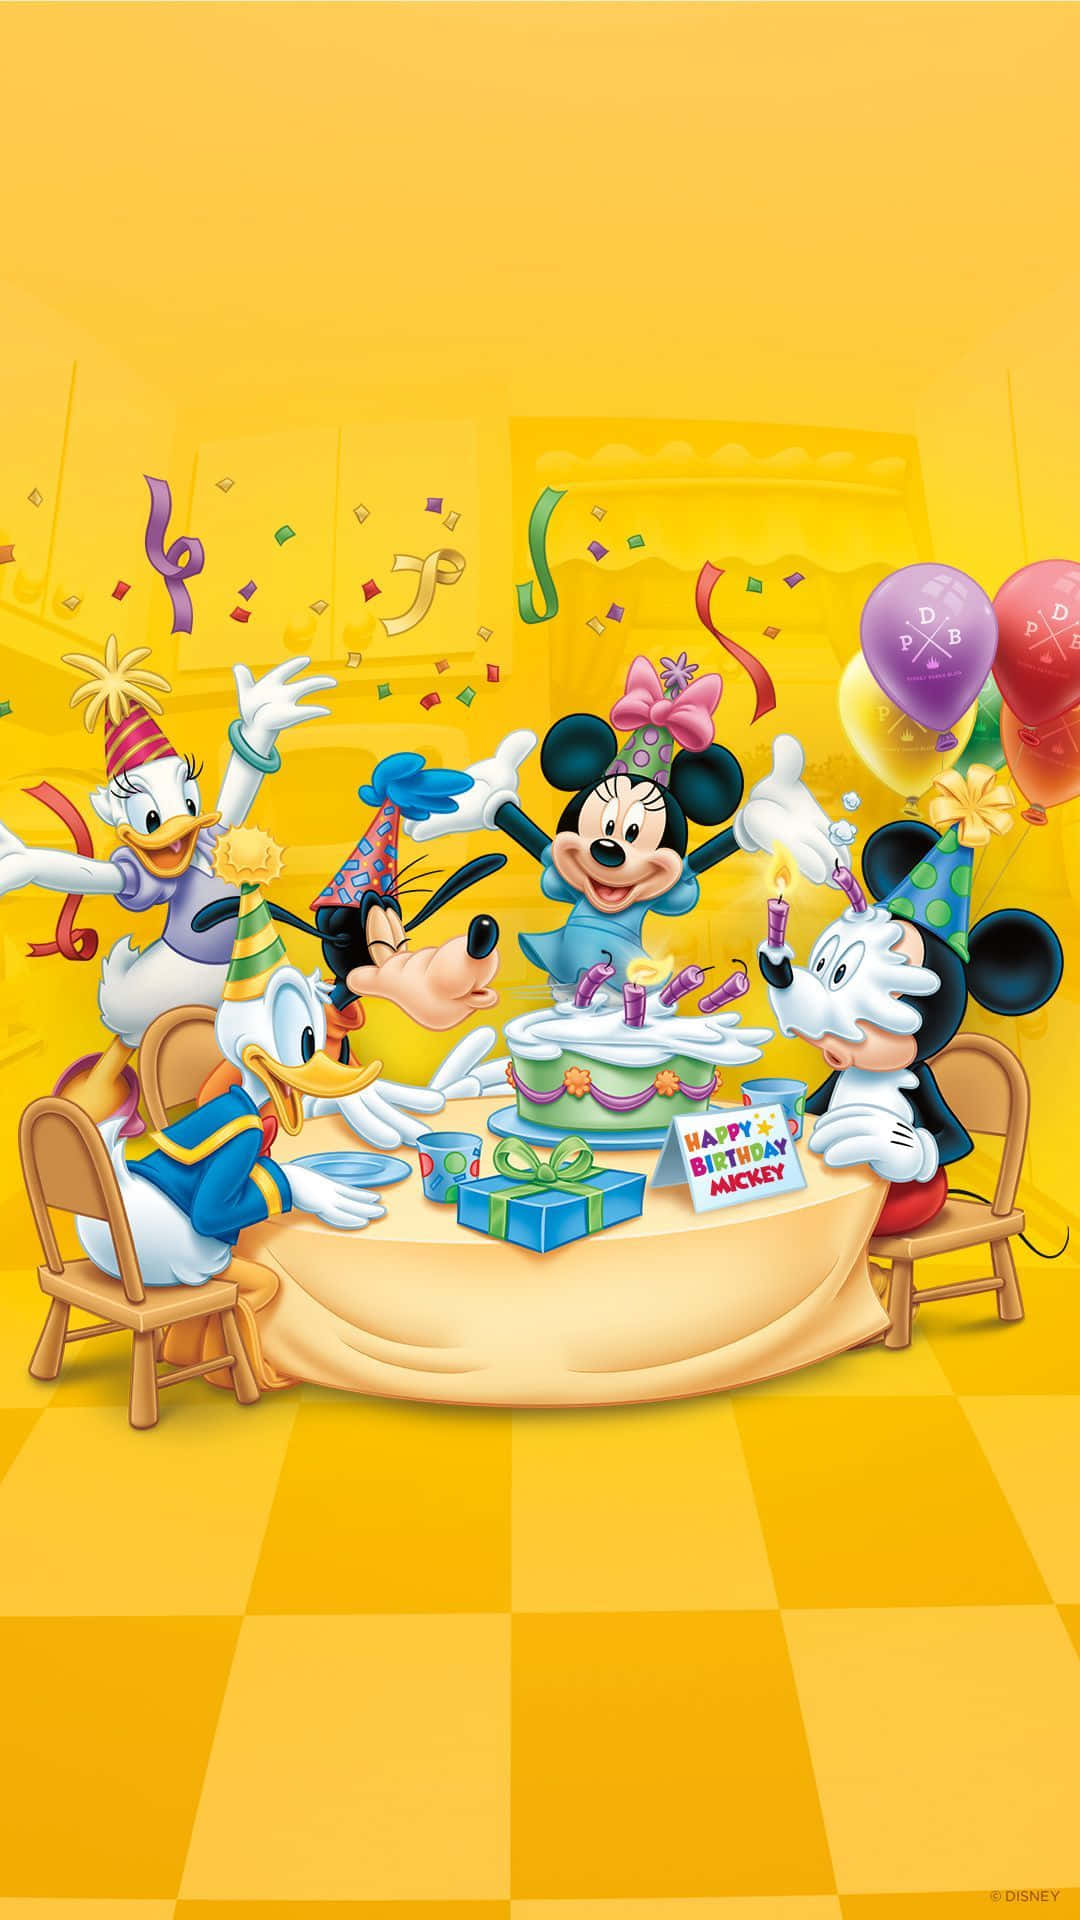 Disney Birthday 1080 X 1920 Background